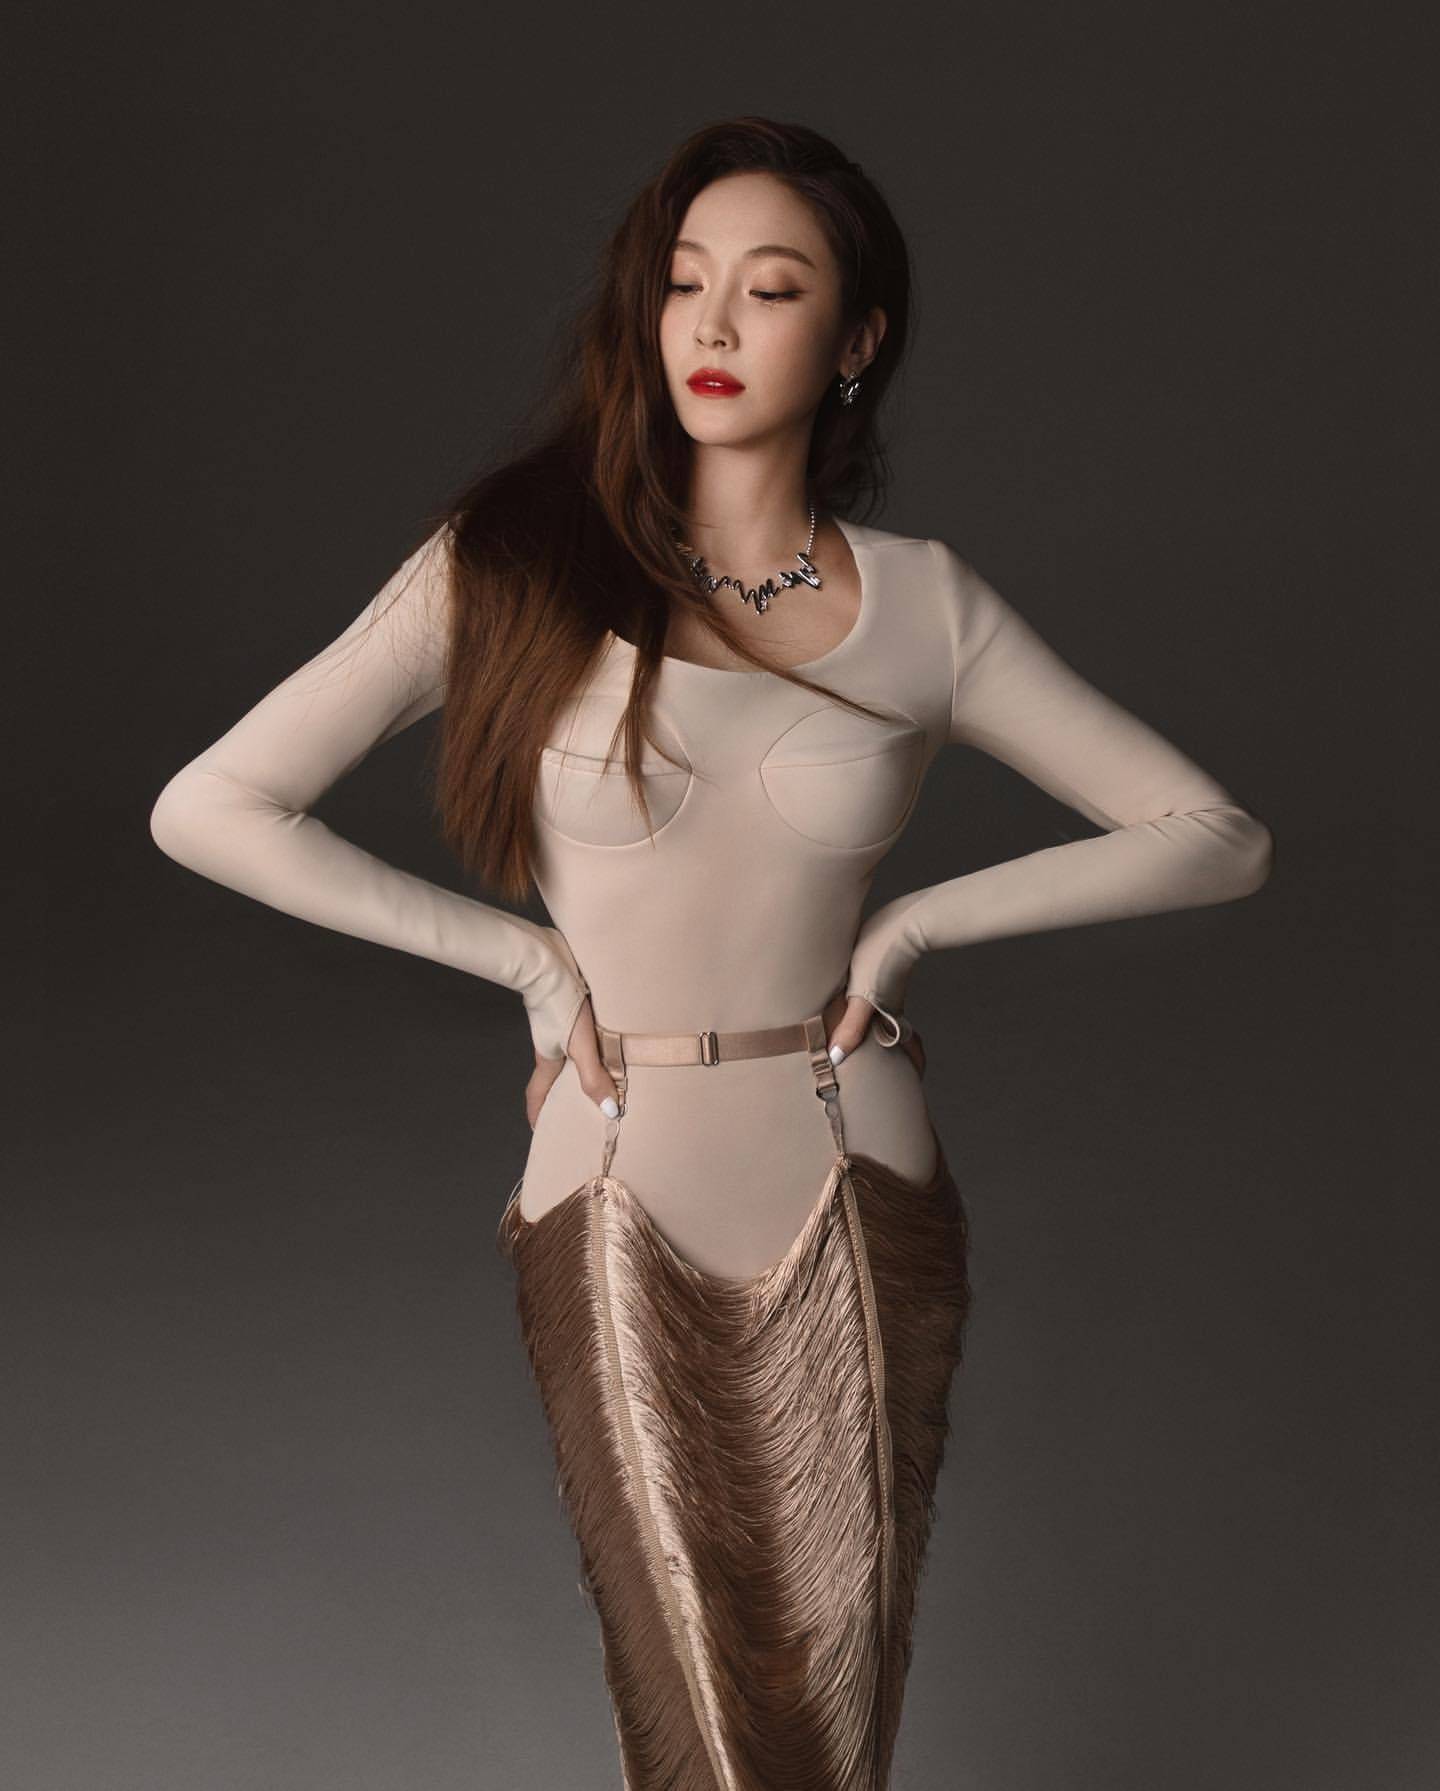 郑秀妍的诱惑魅力,性感的可乐瓶身材,颠覆传统风格的女神美